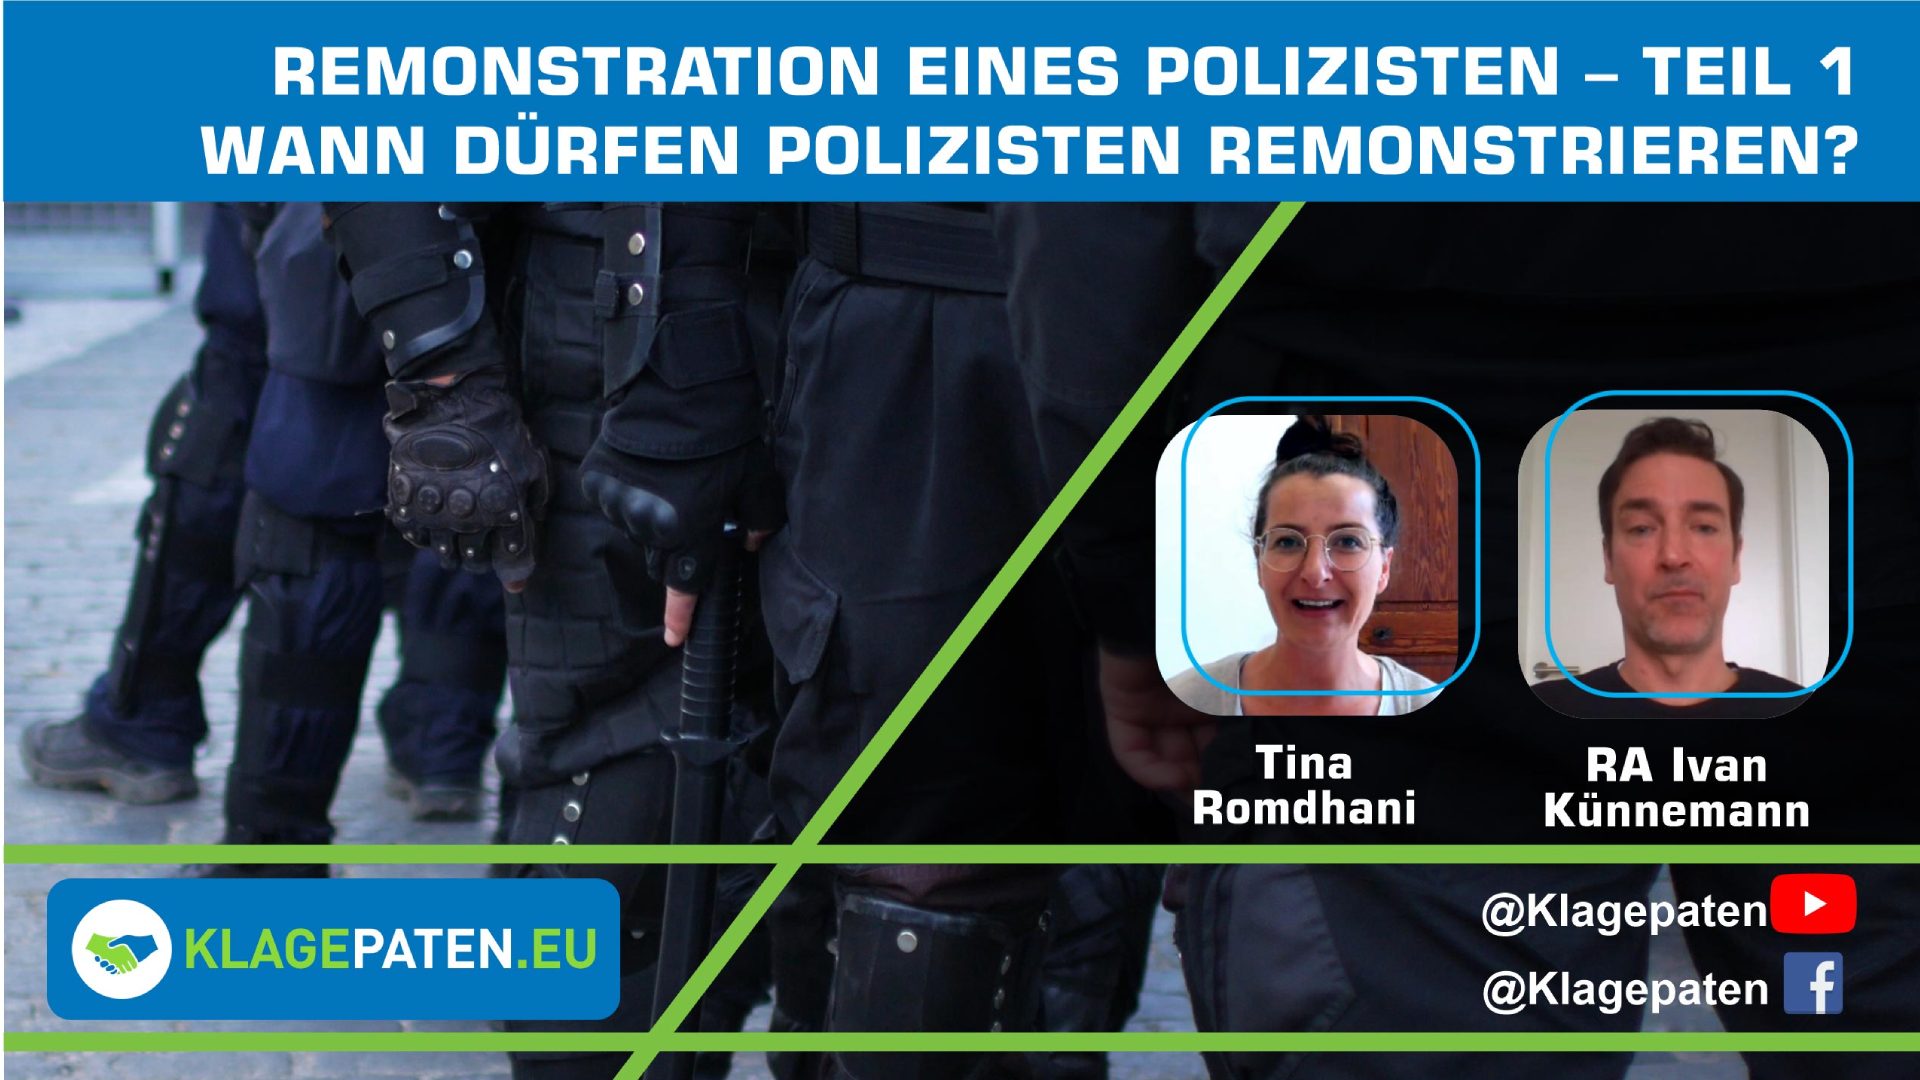 Remonstration eines Polizisten Teil 1 RA Ivan Künnemann im Gespräch  KPTV 44